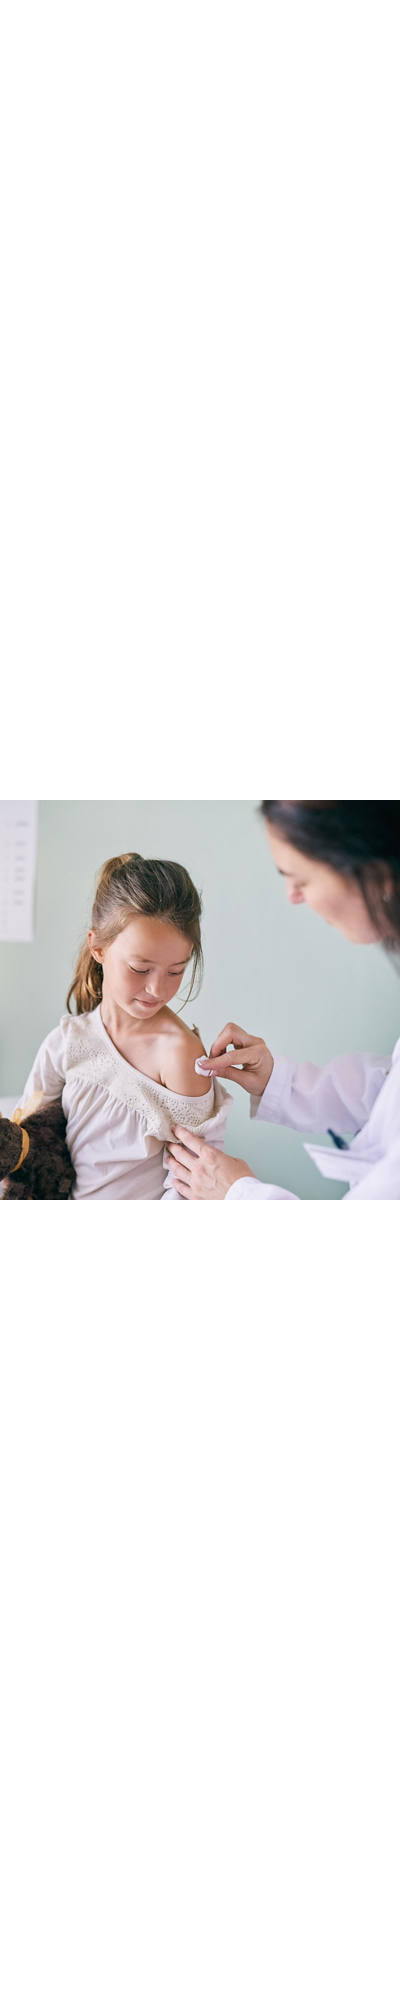 Kind beim Impfen